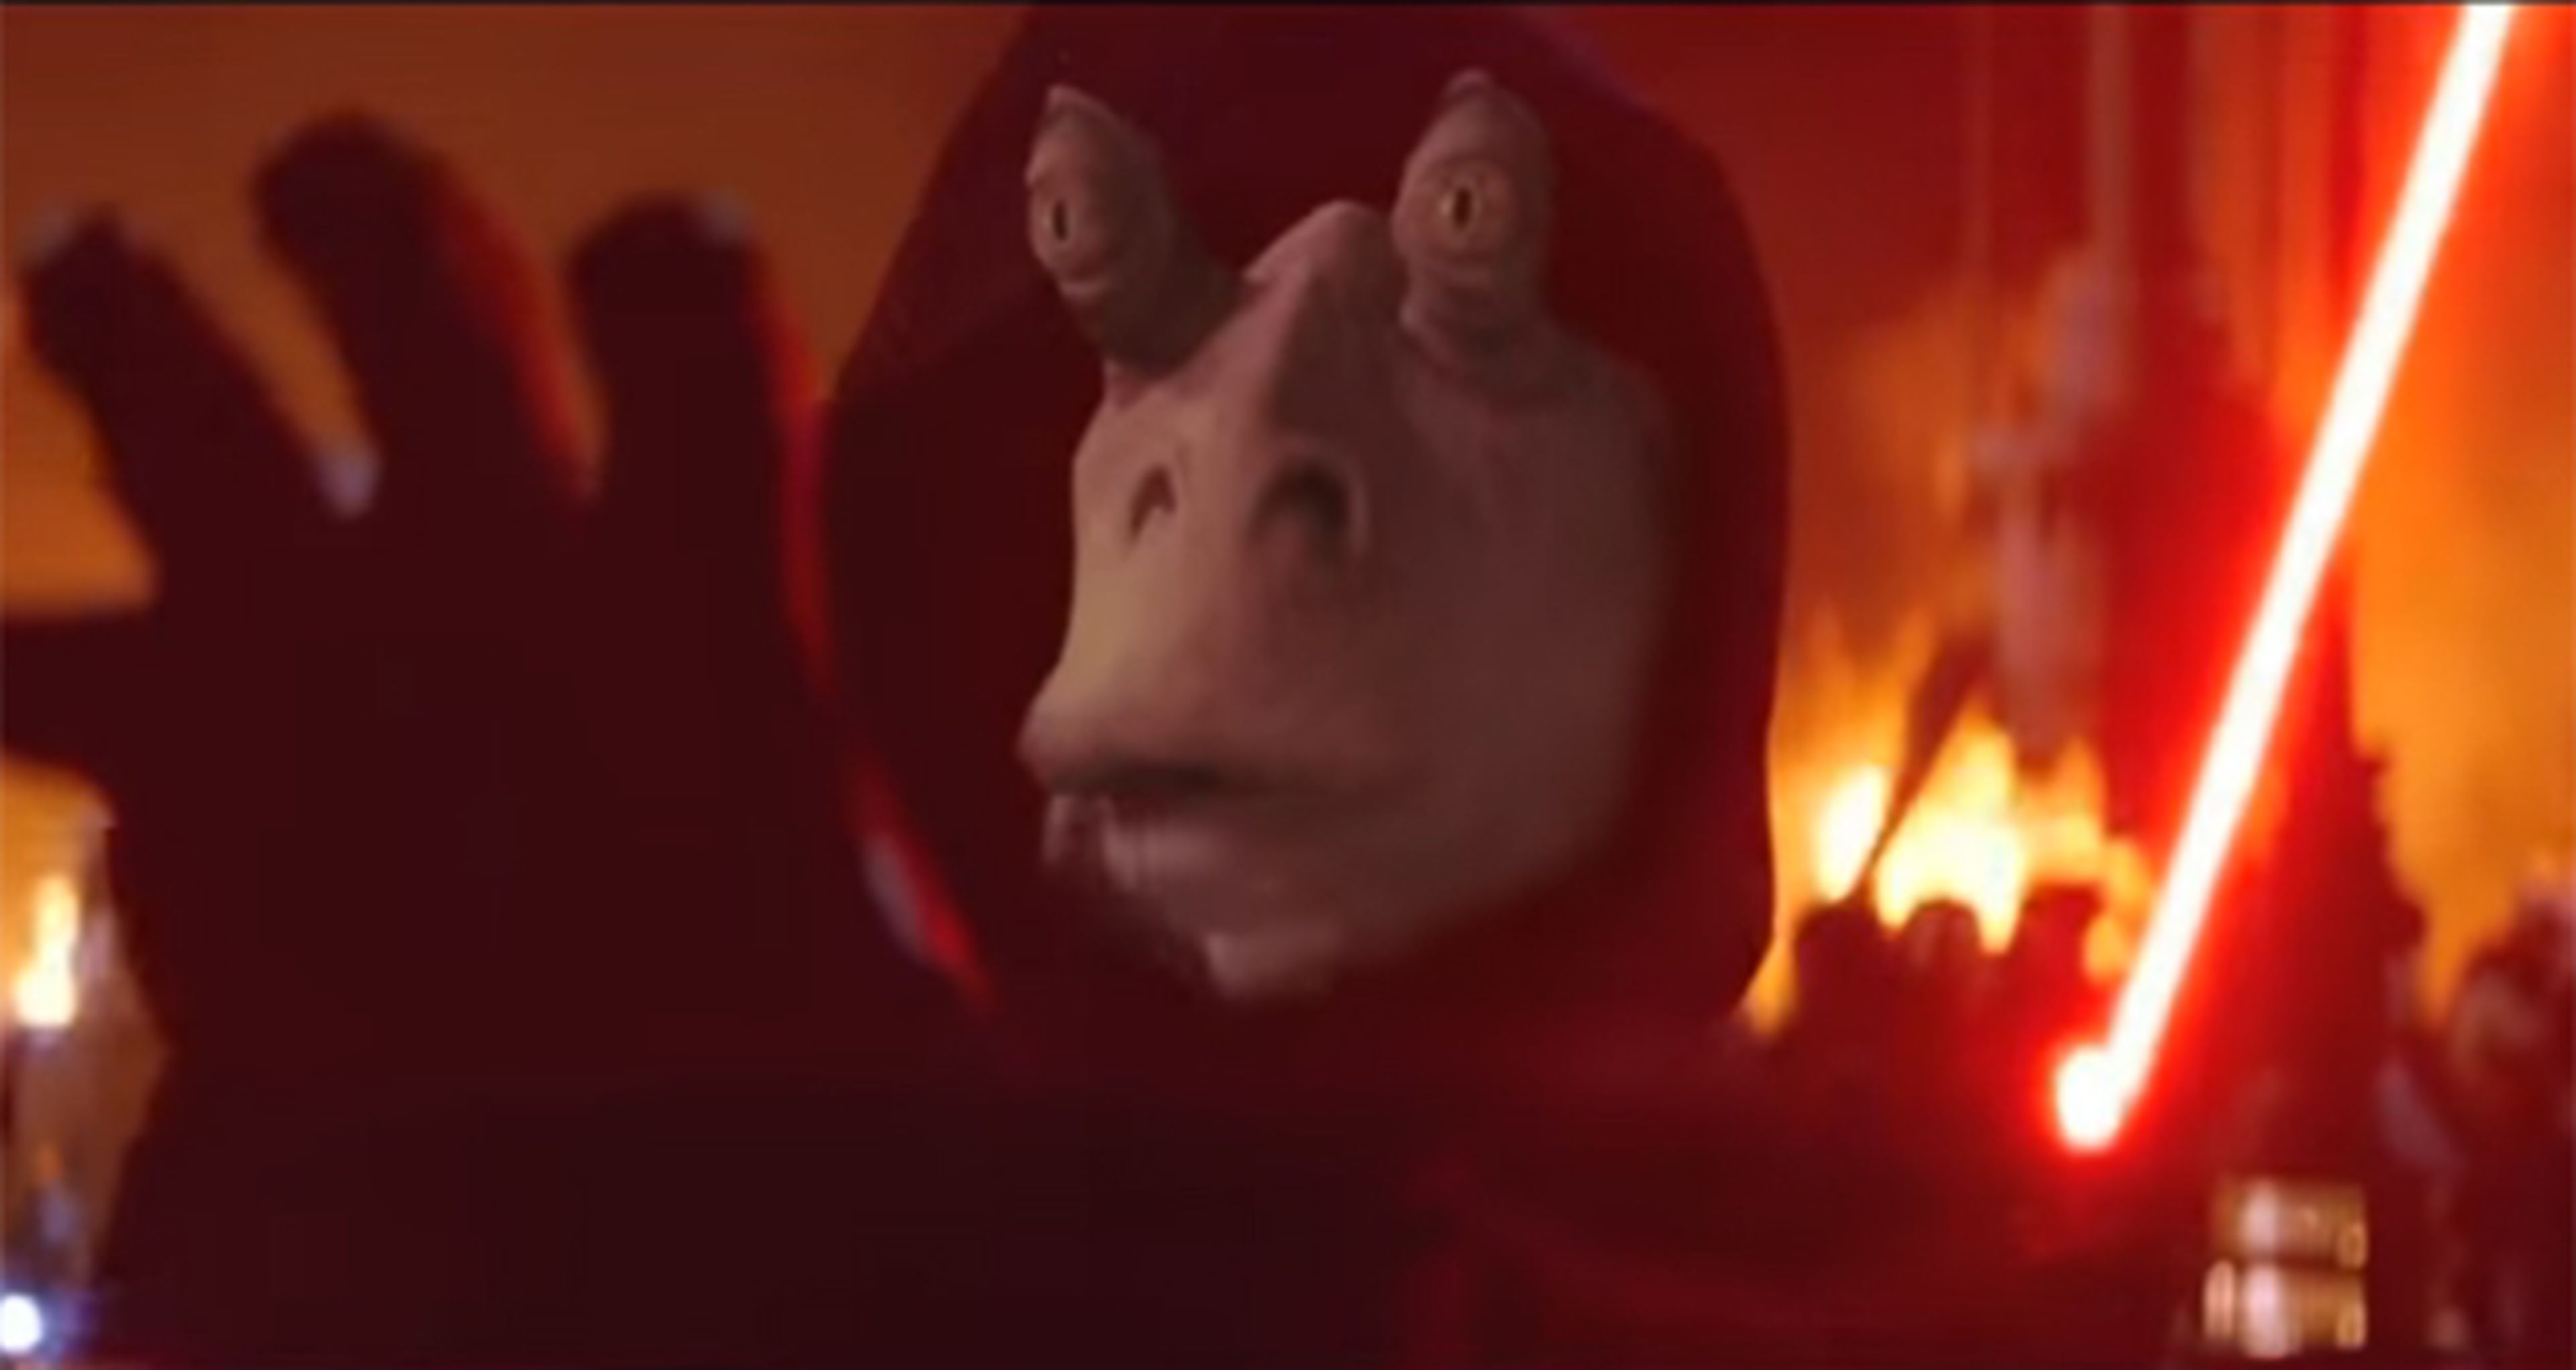 Star Wars Vii El Trailer Oficial Con Jar Jar Binks